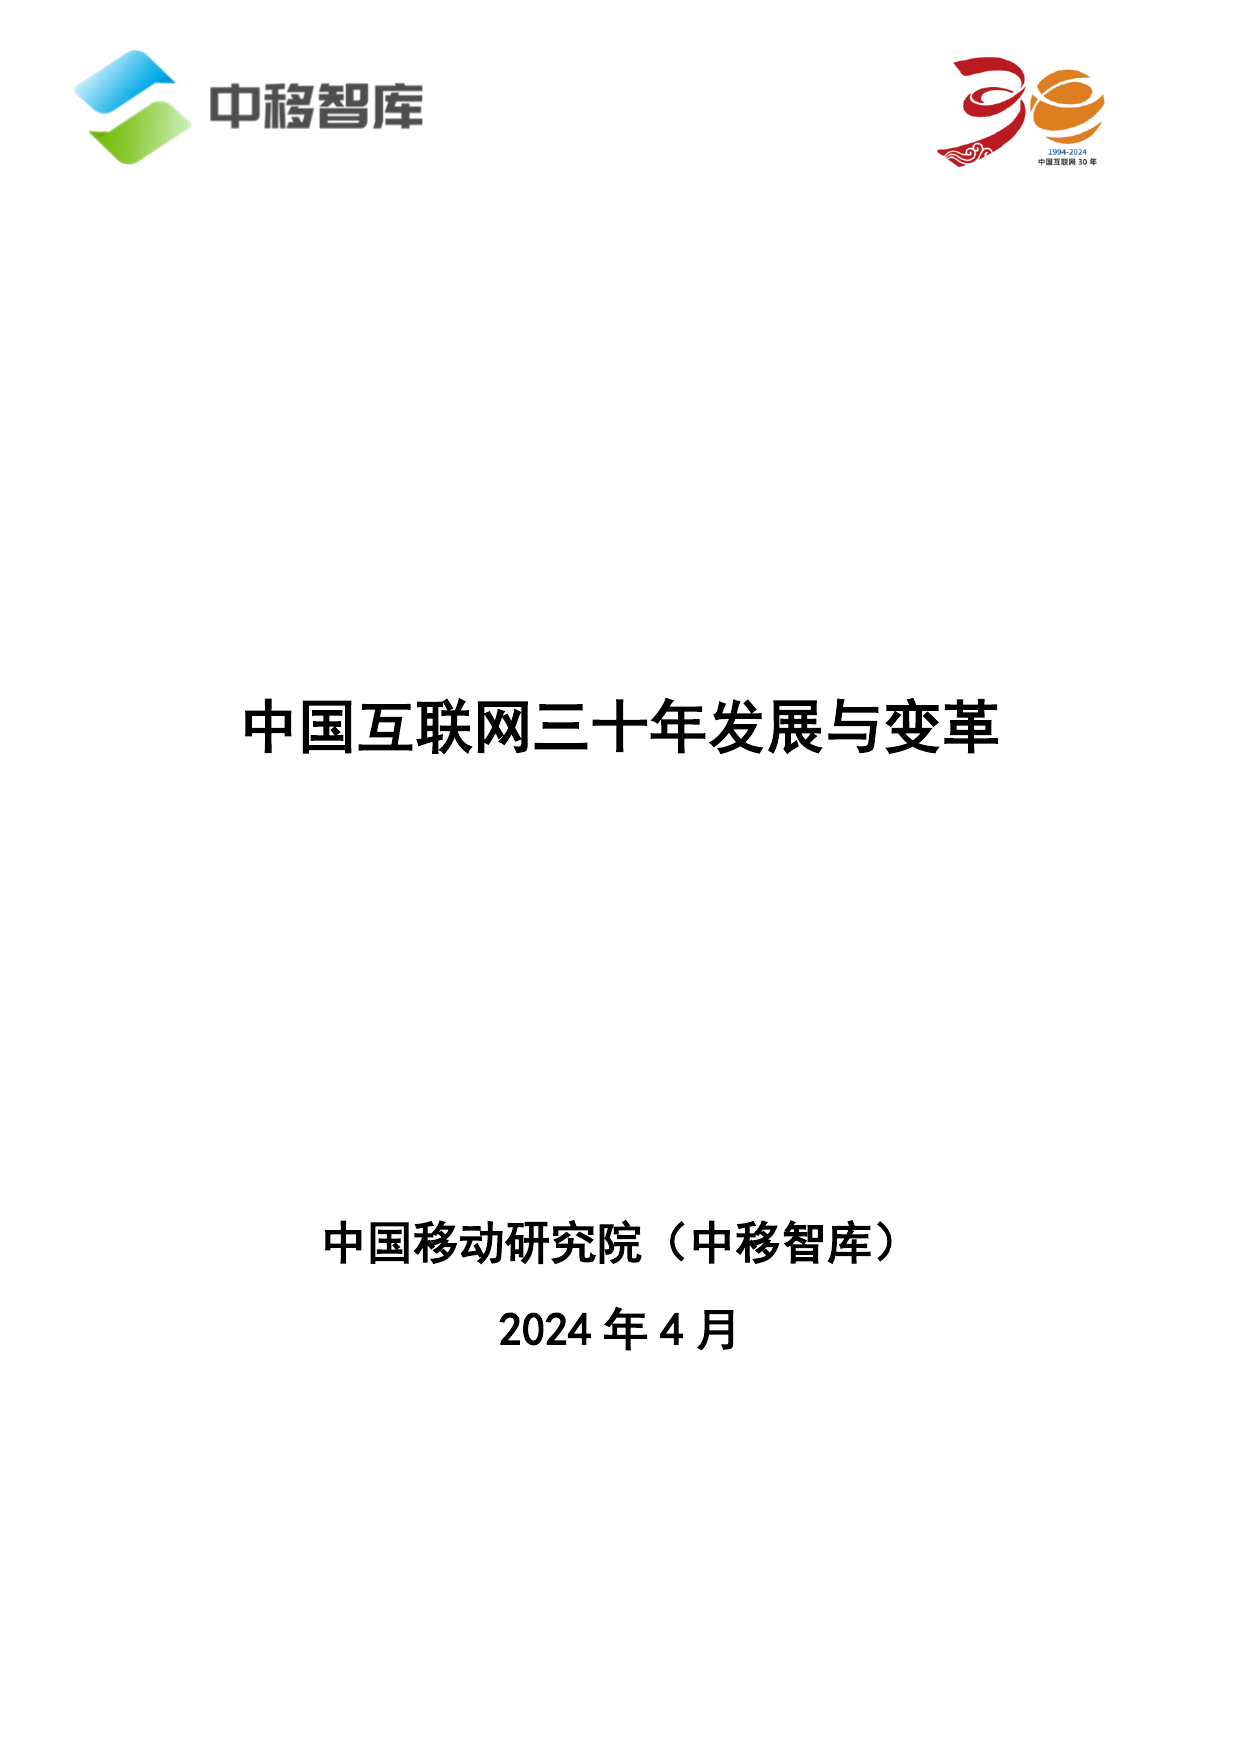 2024中国互联网三十年发展与变革报告-中移智库-202404.pdf